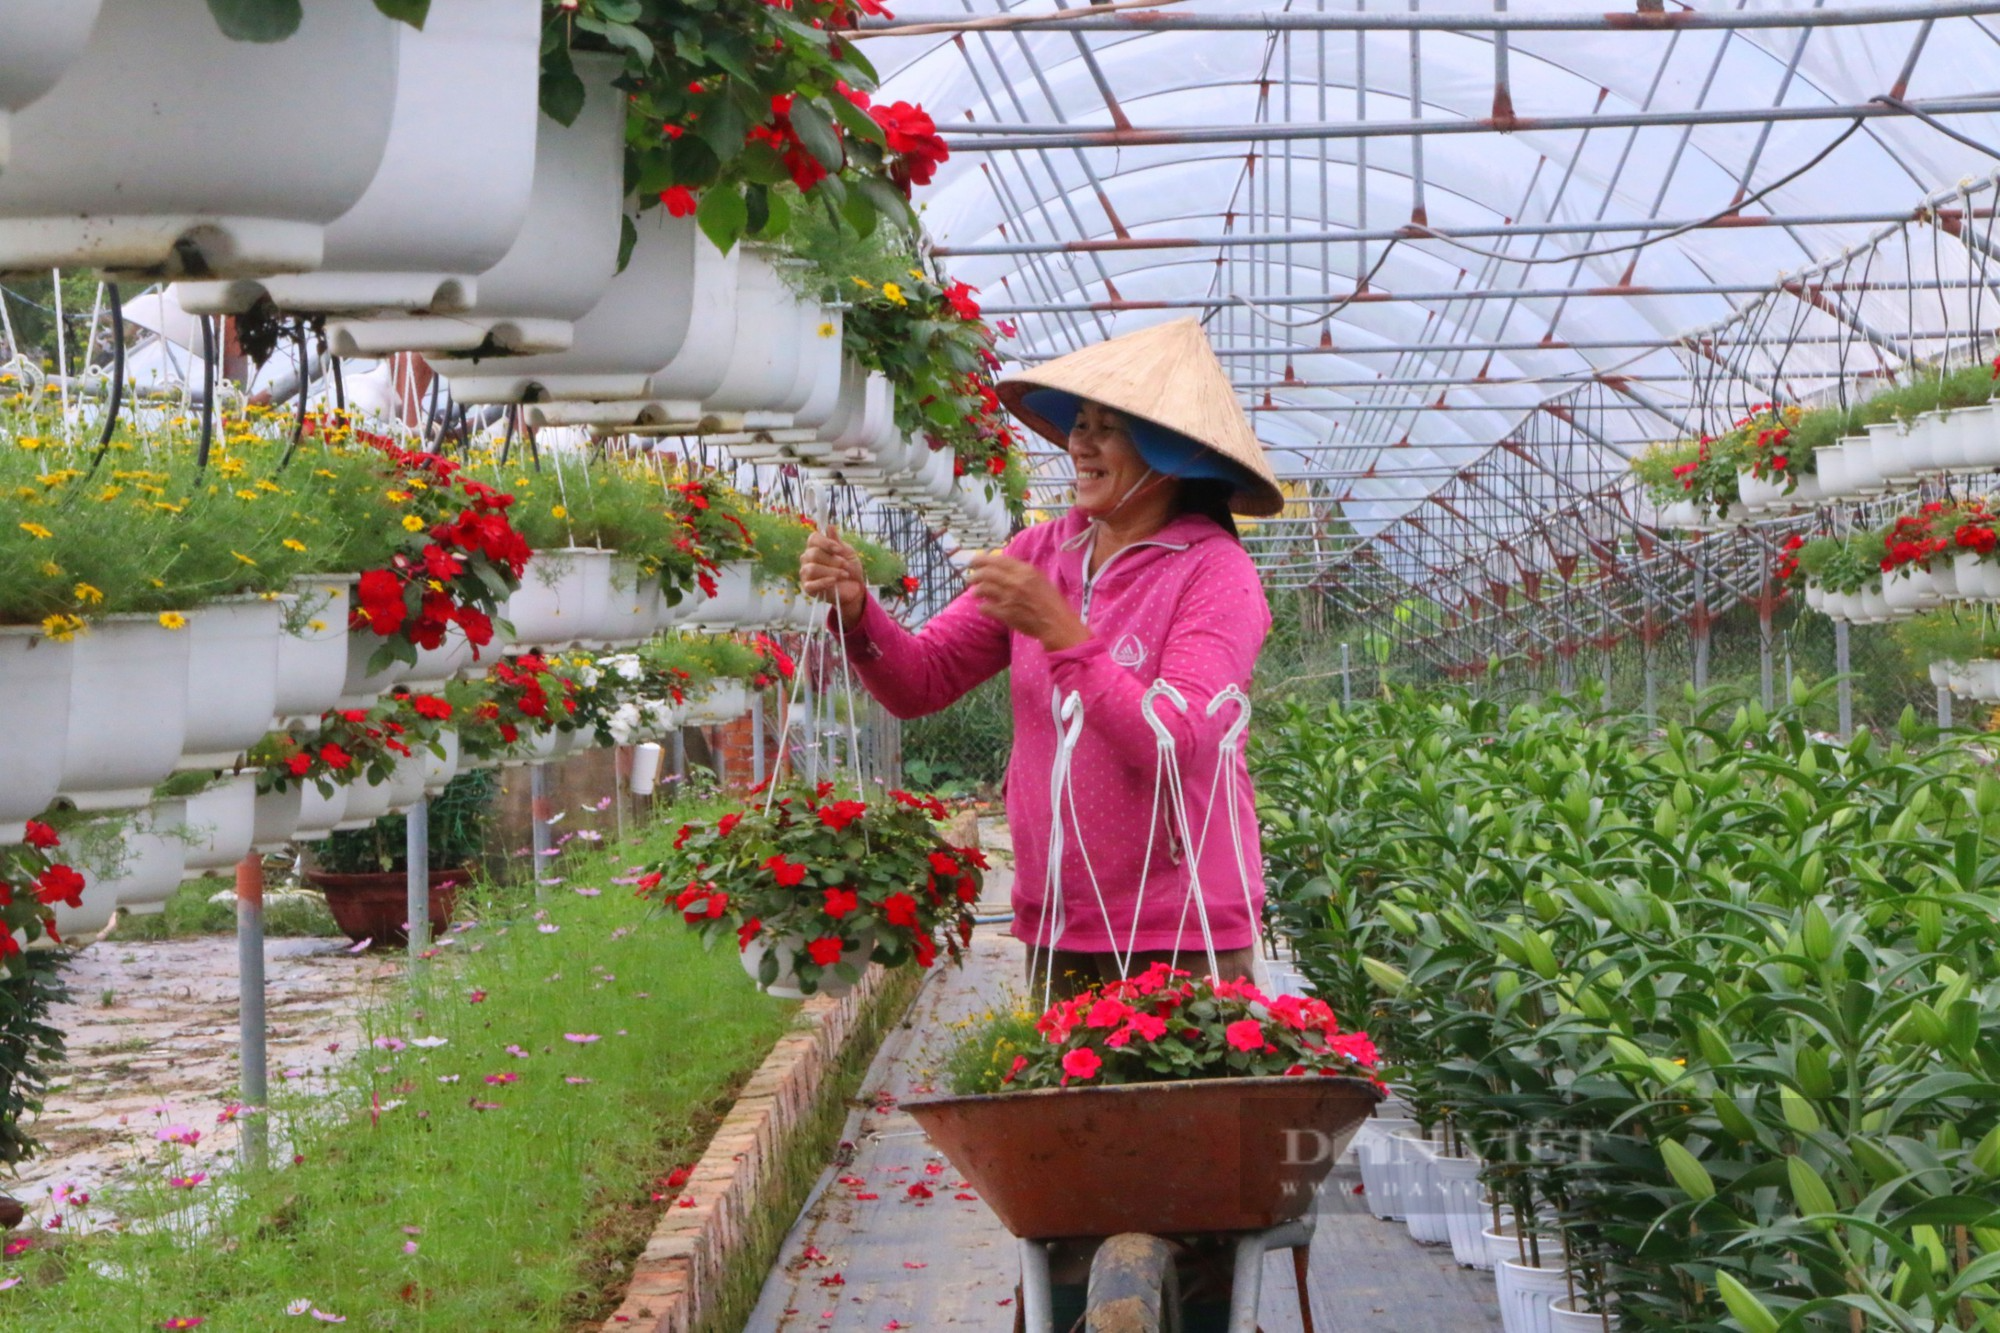 Vựa hoa lớn nhất tại Đà Nẵng trúng đậm, chưa đến Tết đã hết hoa - Ảnh 4.